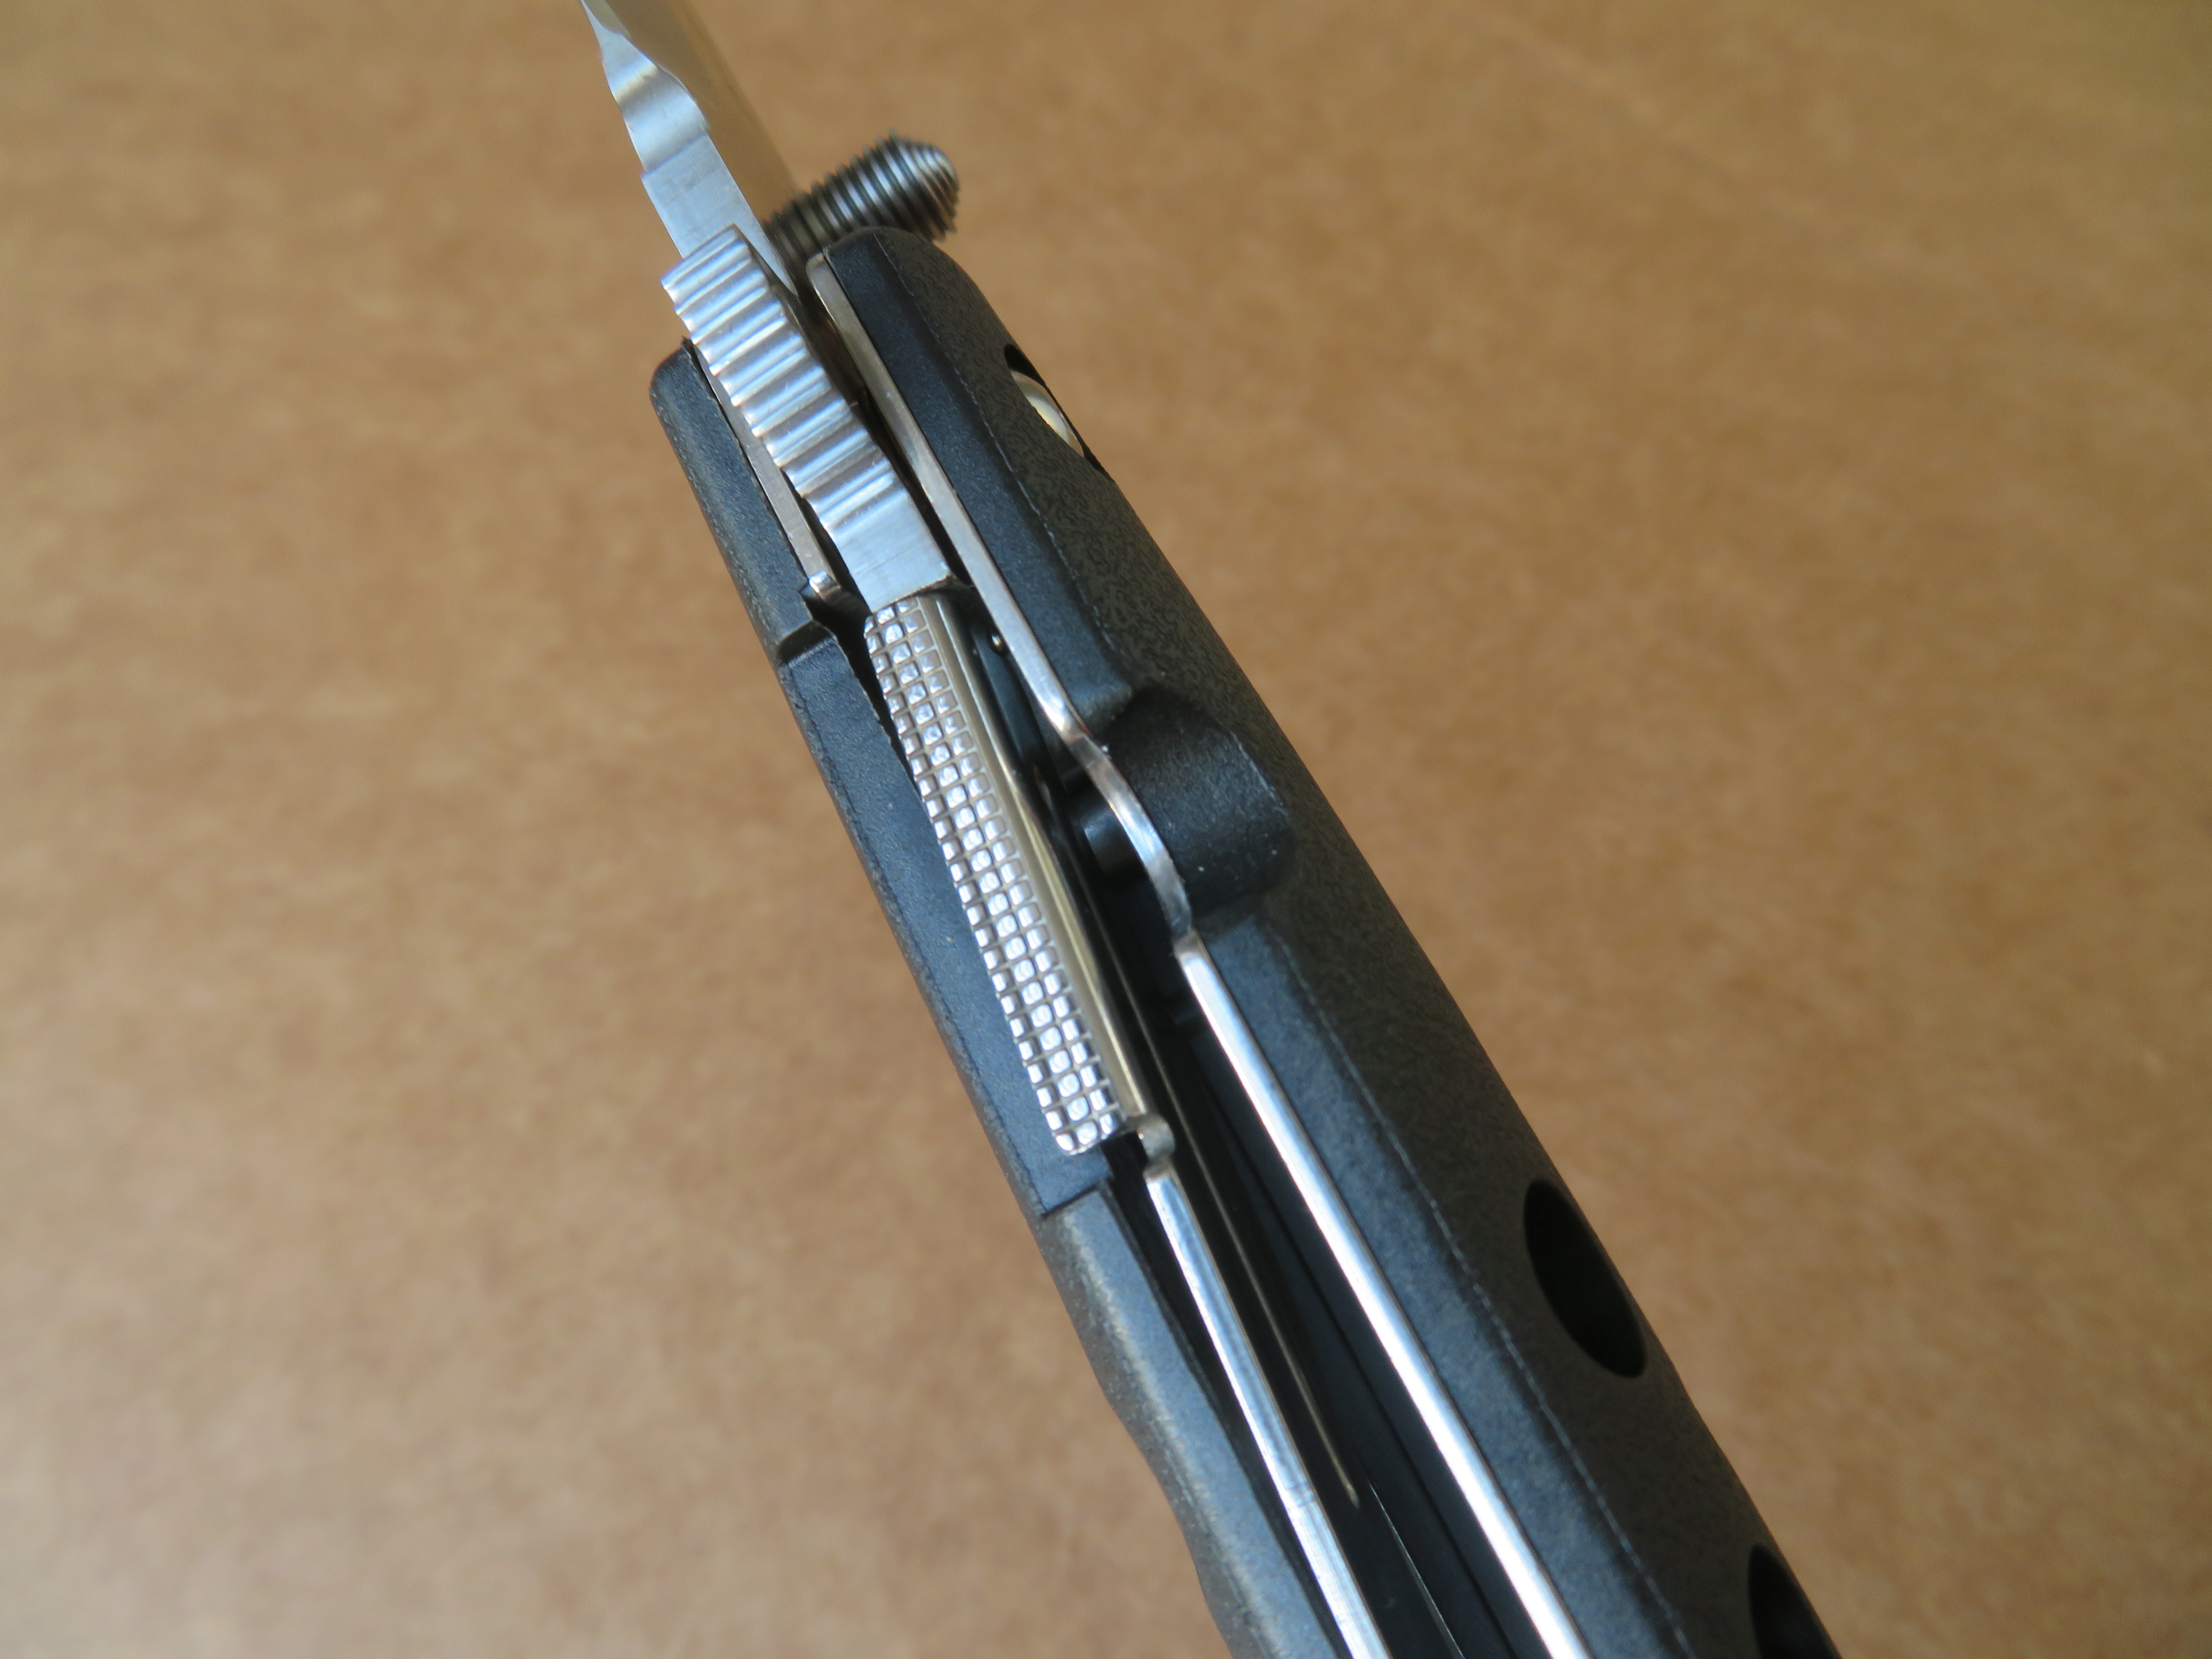 Jako pojistný systém u nože Ti-Lite je použit linerlock.